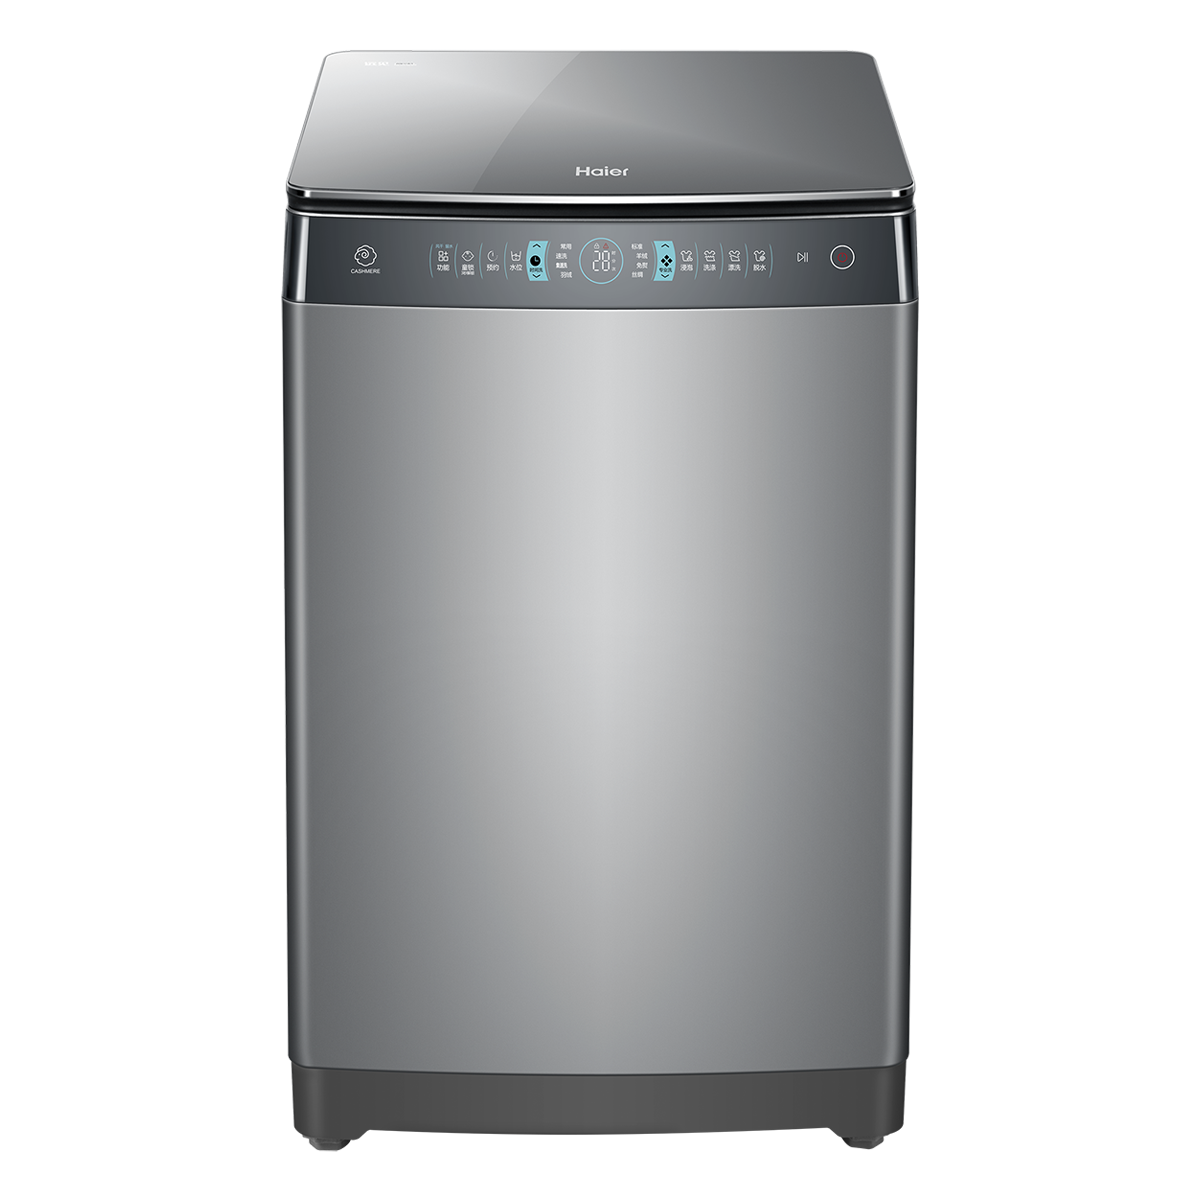 海尔Haier洗衣机 MS100-BZ968 说明书